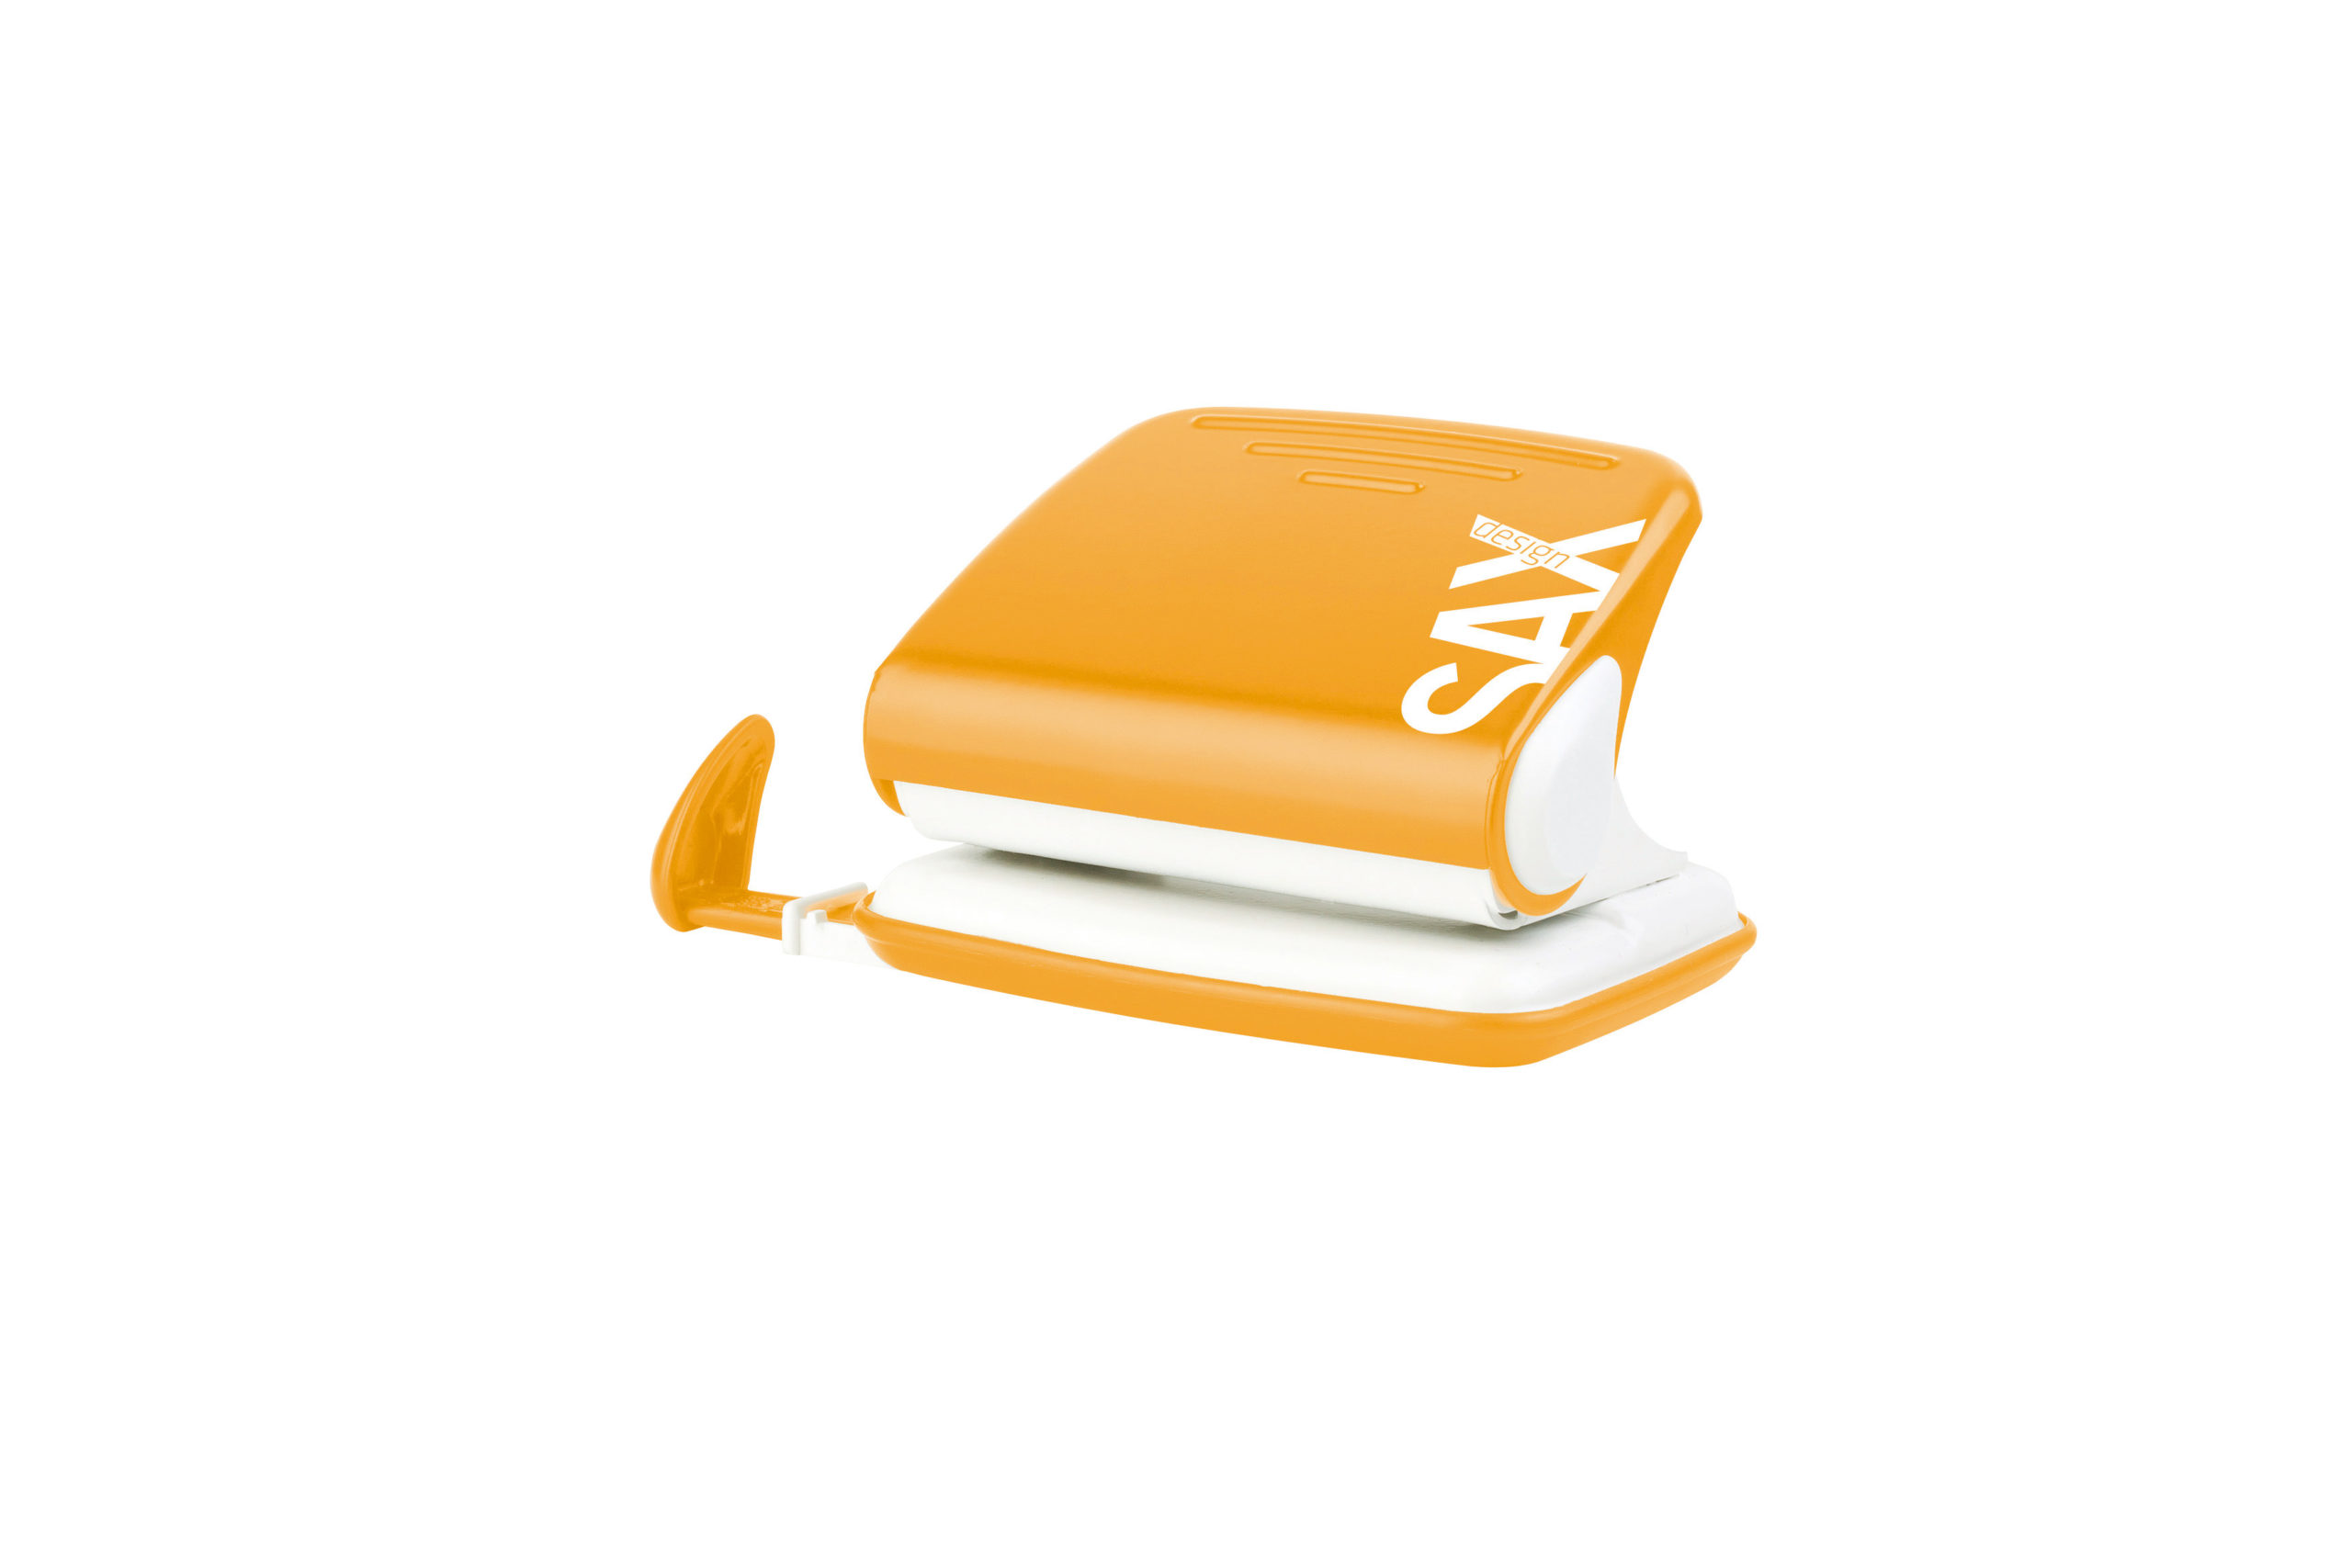 Bušilica  za papir  Sax design Colour  - 2 rupe do 20 listova - narandžasta